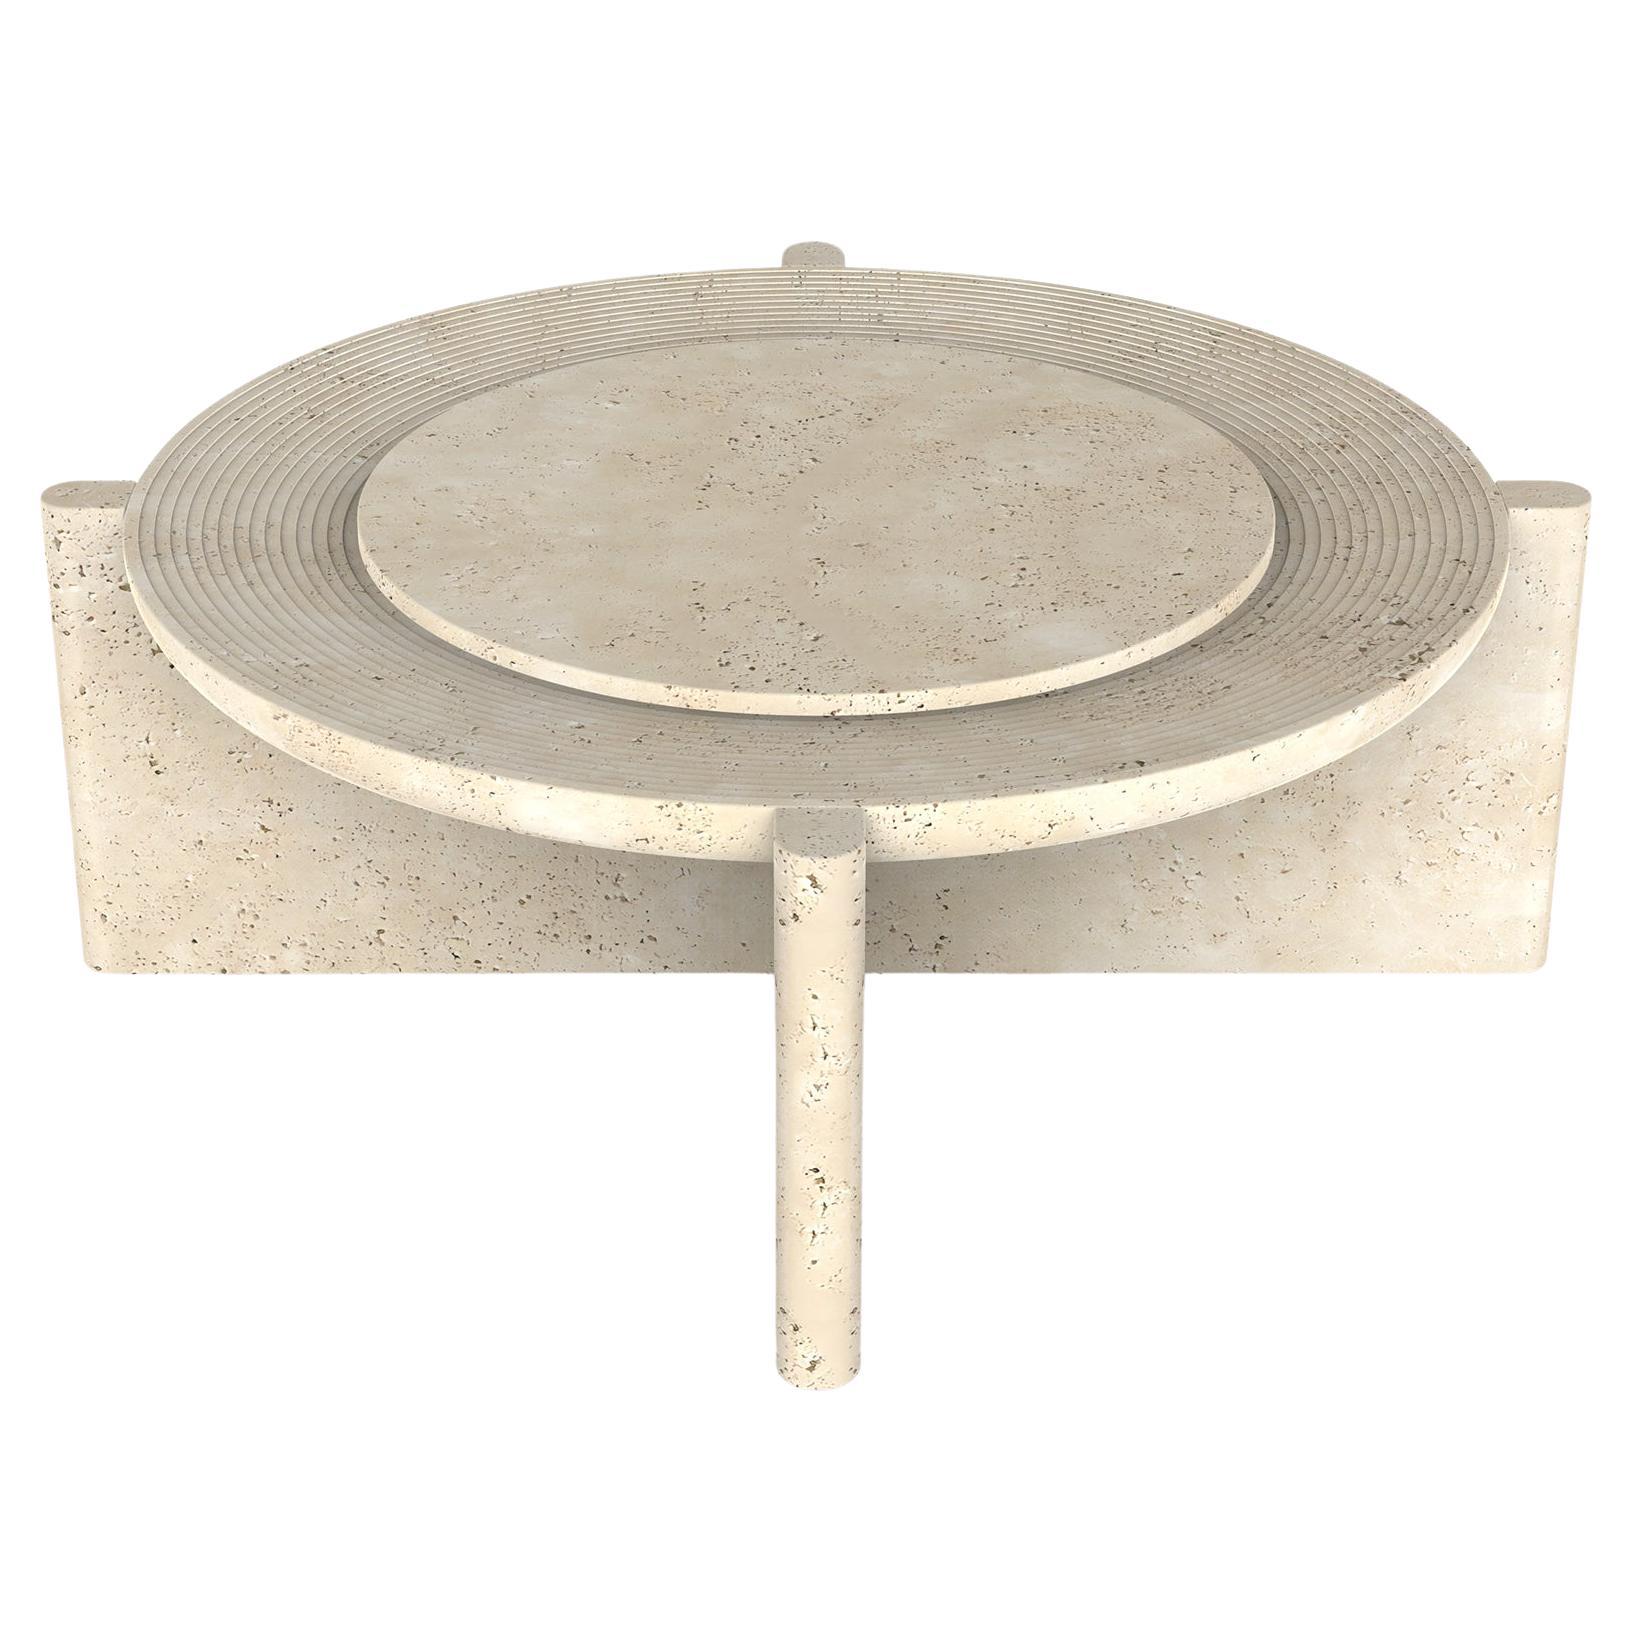 Table basse Arkhe No 2, ronde sculpturale moderne par Fulden Topaloglu